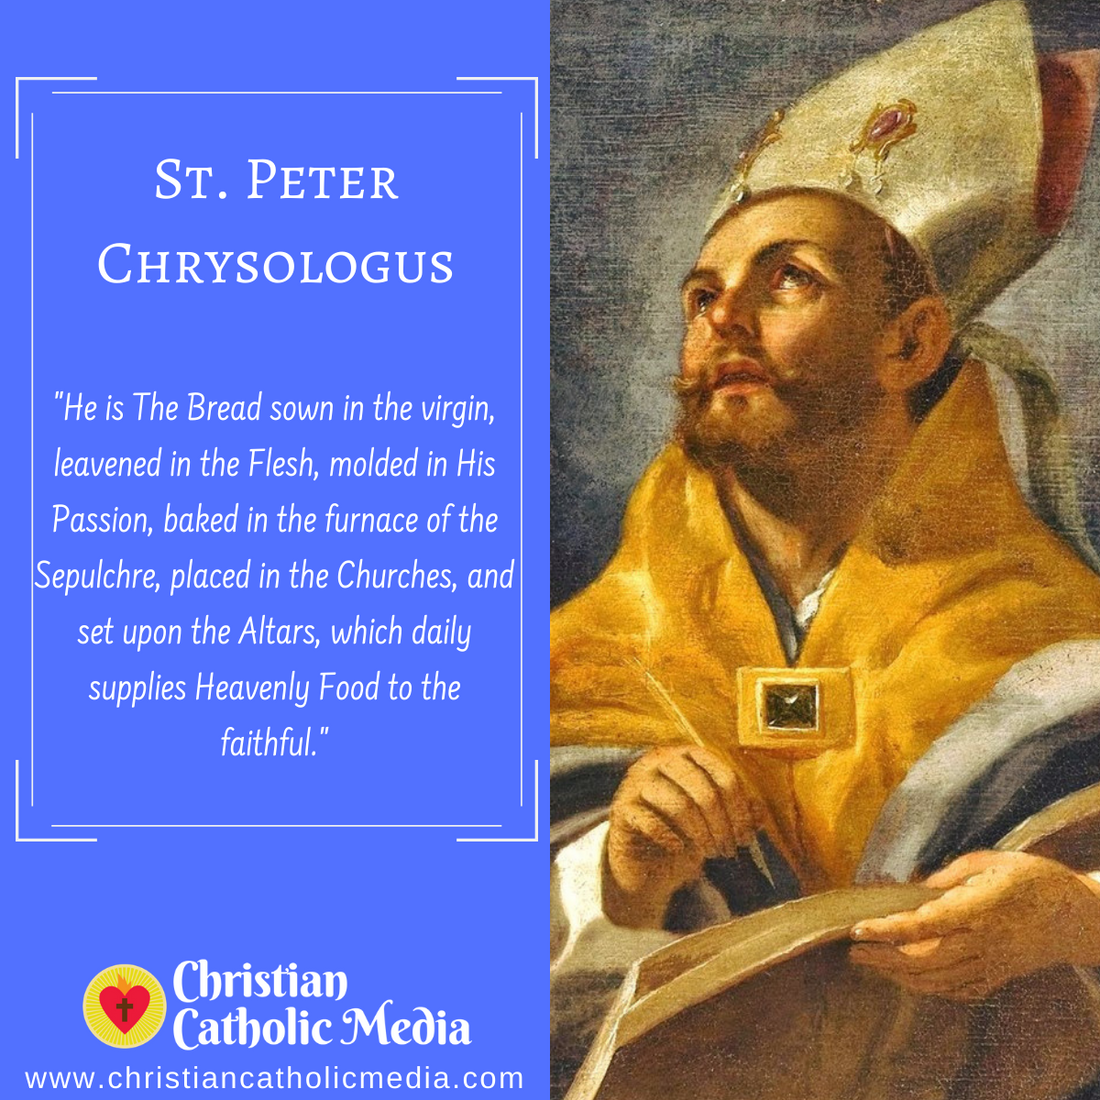 St. Peter Chrysologus - Thursday November 5, 2020